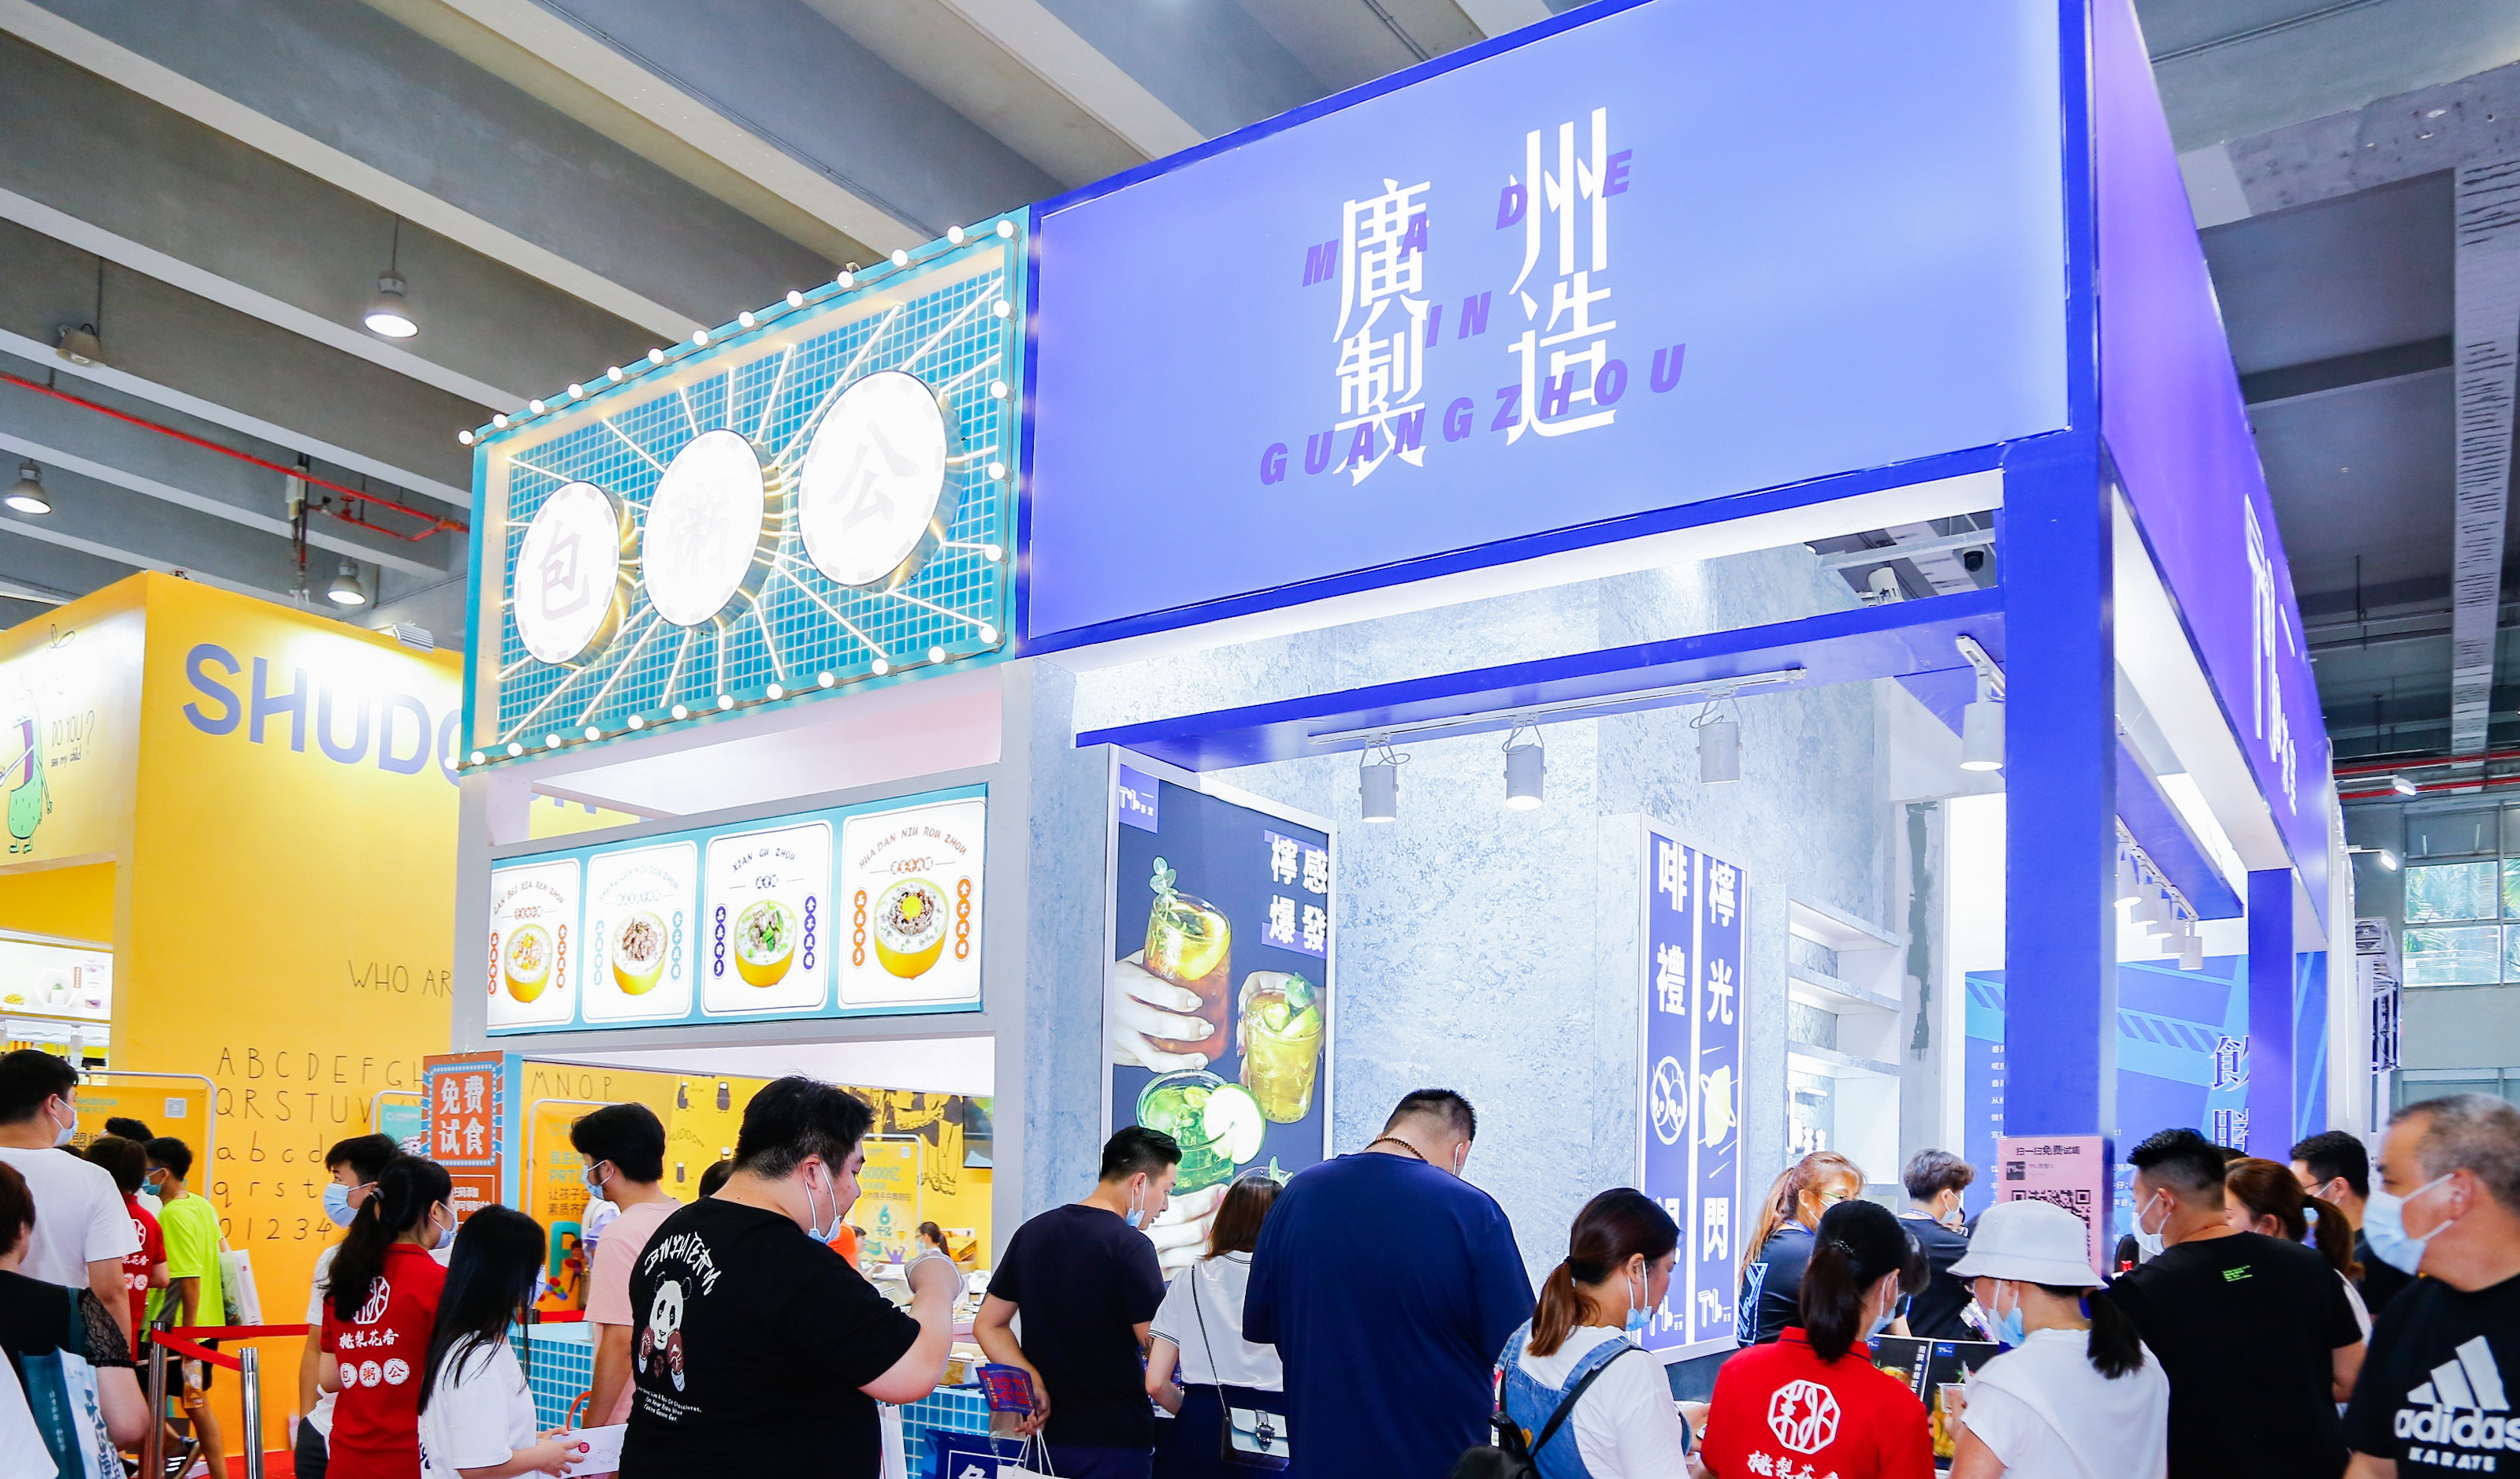 2021年广州餐饮展将在3月4-6日在琶洲展览中心举办。广州餐饮展览会始终关注国际知名连锁餐饮品牌在国内的开发和拓展趋势，为投资人提供最新的相关资讯。